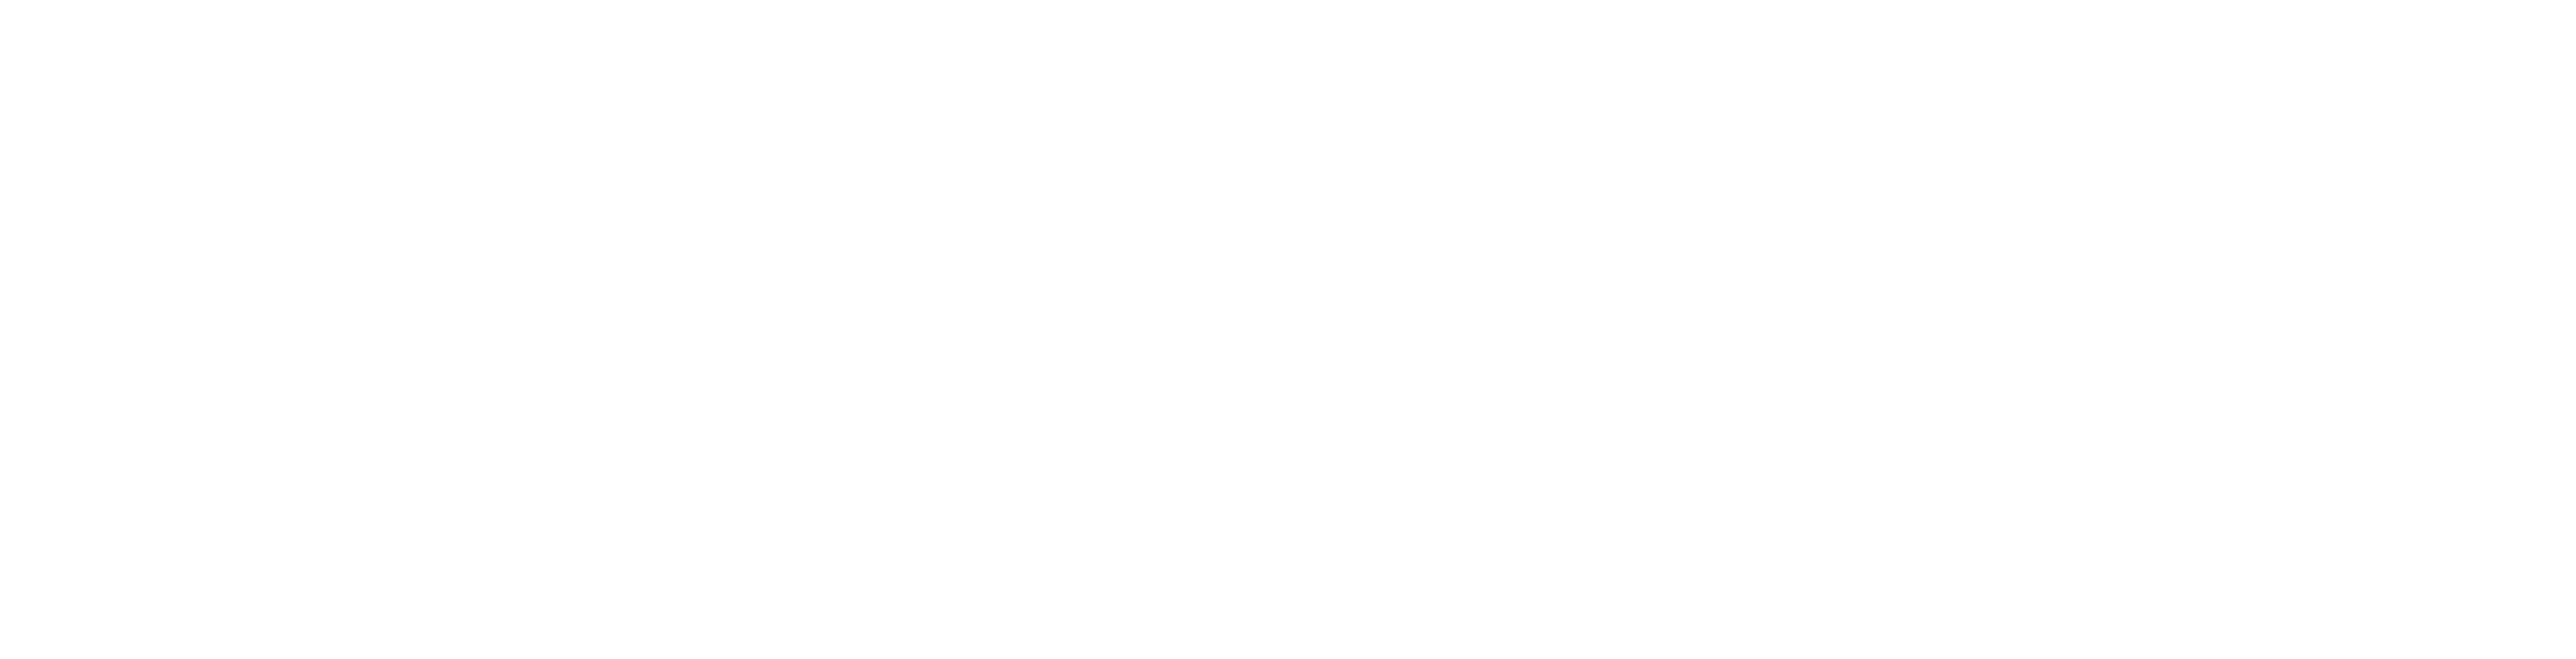 paramount-carousel-logo